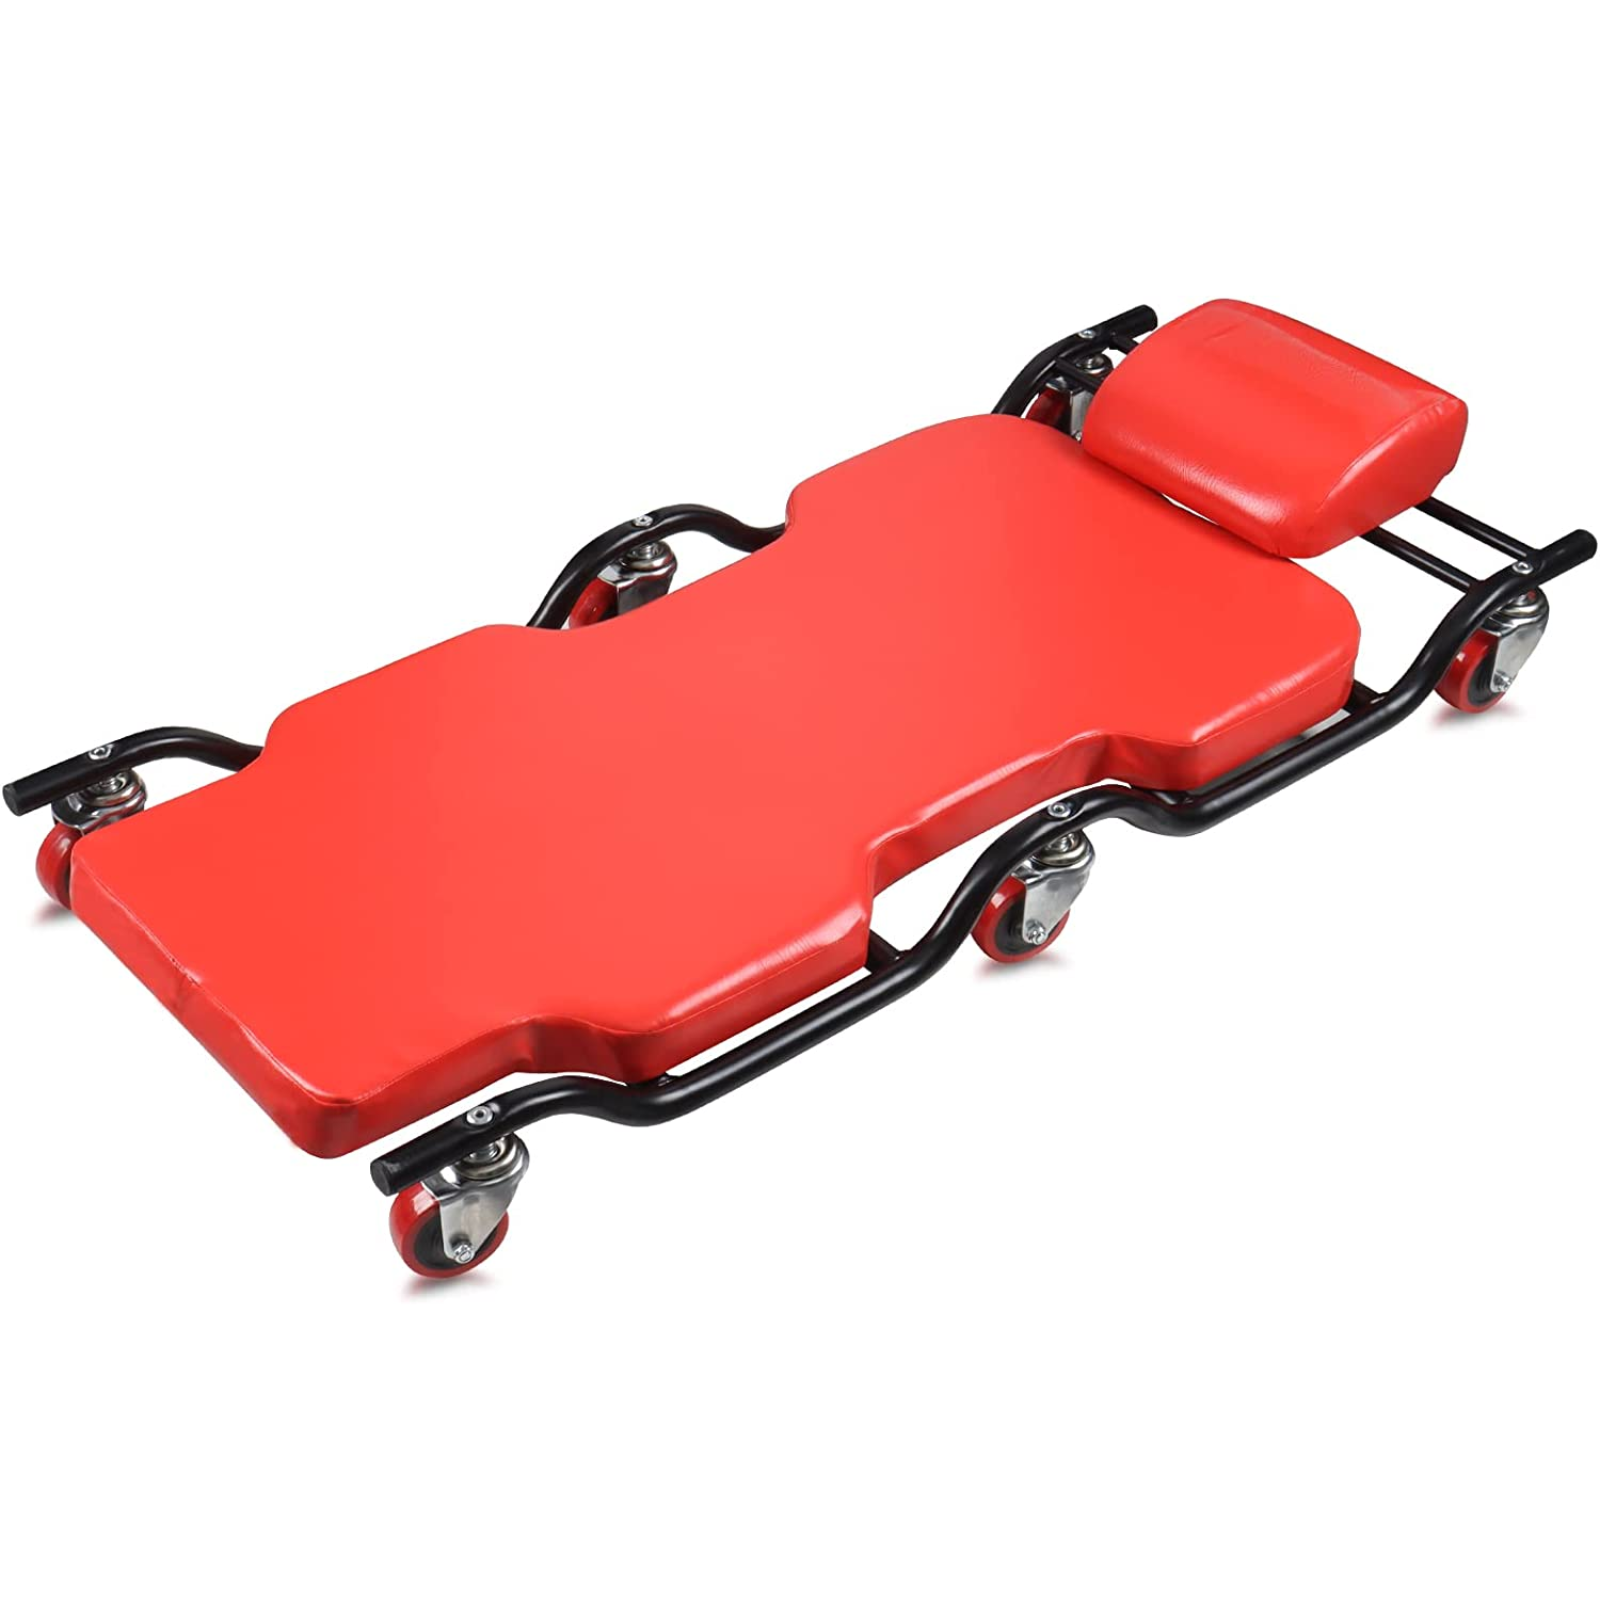 BESTOOL Enredadera automotriz de servicio pesado | Enredadera mecánica con marco de metal | Capacidad de 350 libras, rojo. 